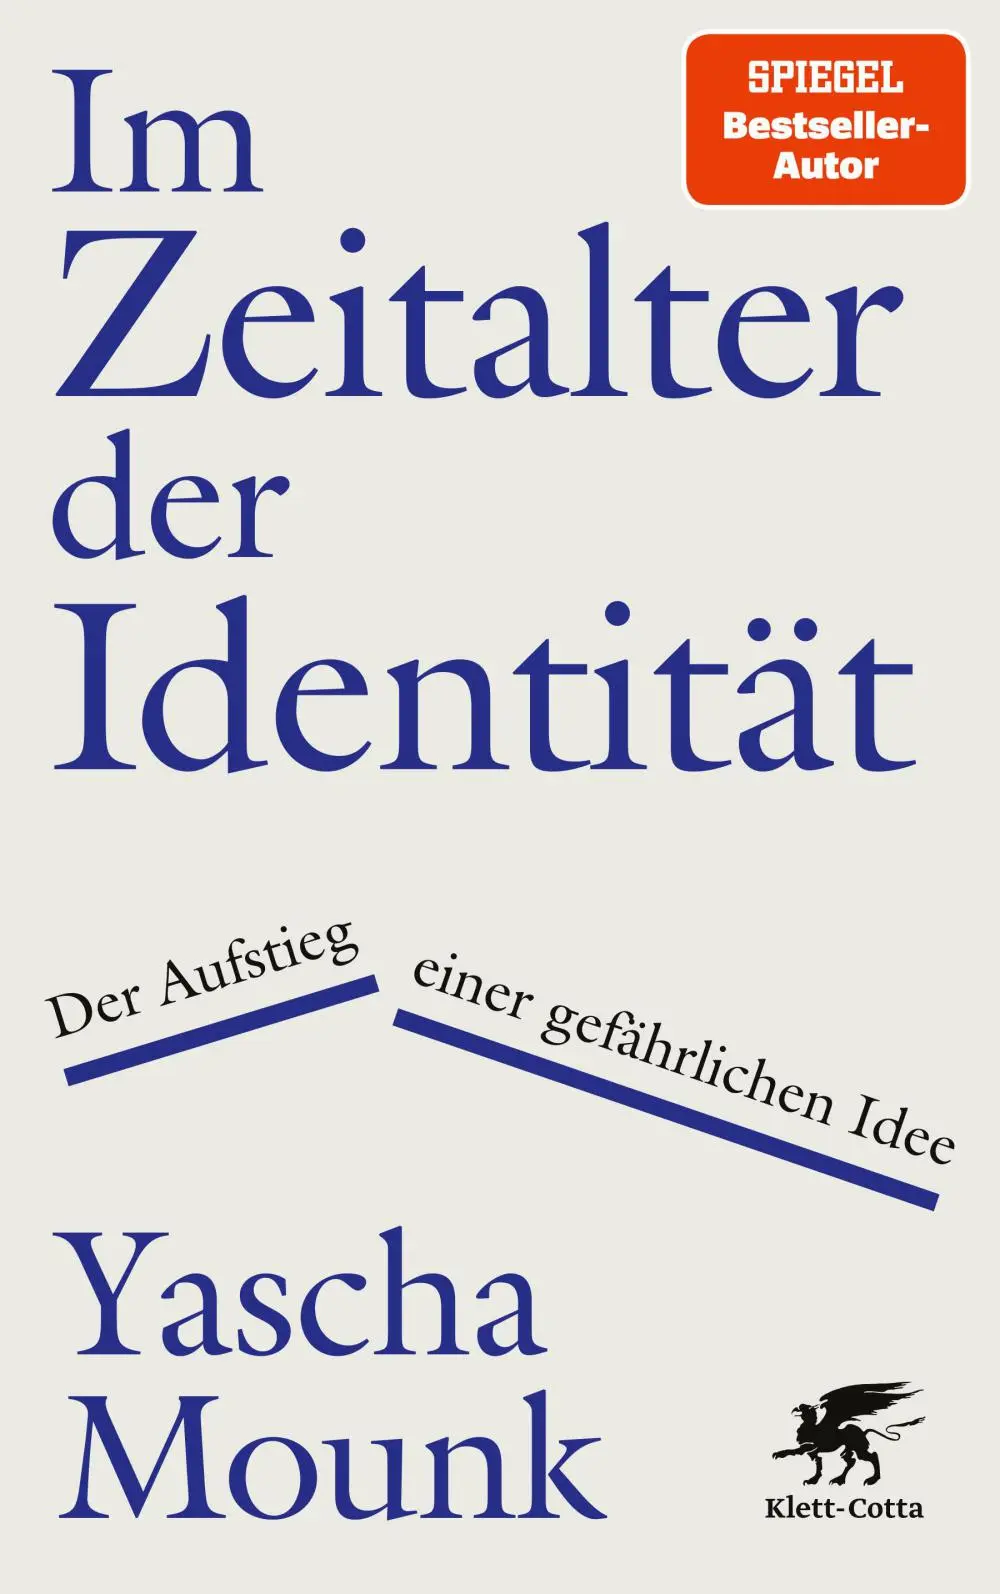 Buchcover: Yascha Mounk: Im Zeitalter der Identität.